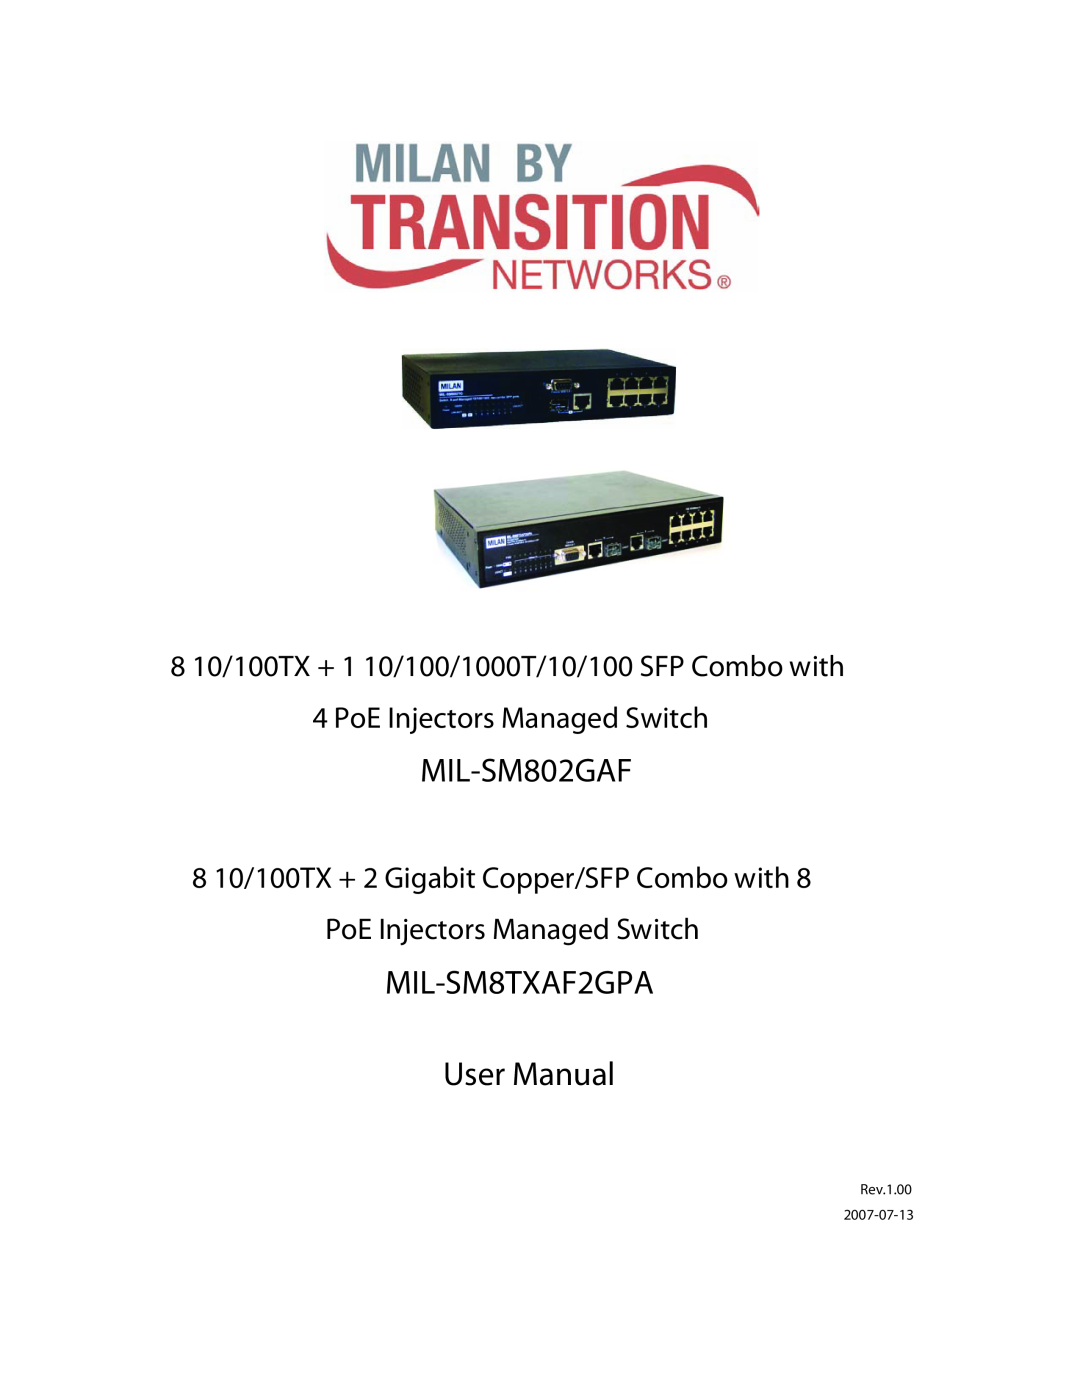 Transition Networks user manual MIL-SM802GAF, MIL-SM8TXAF2GPA User Manual, PoE Injectors Managed Switch, Rev.1.00 